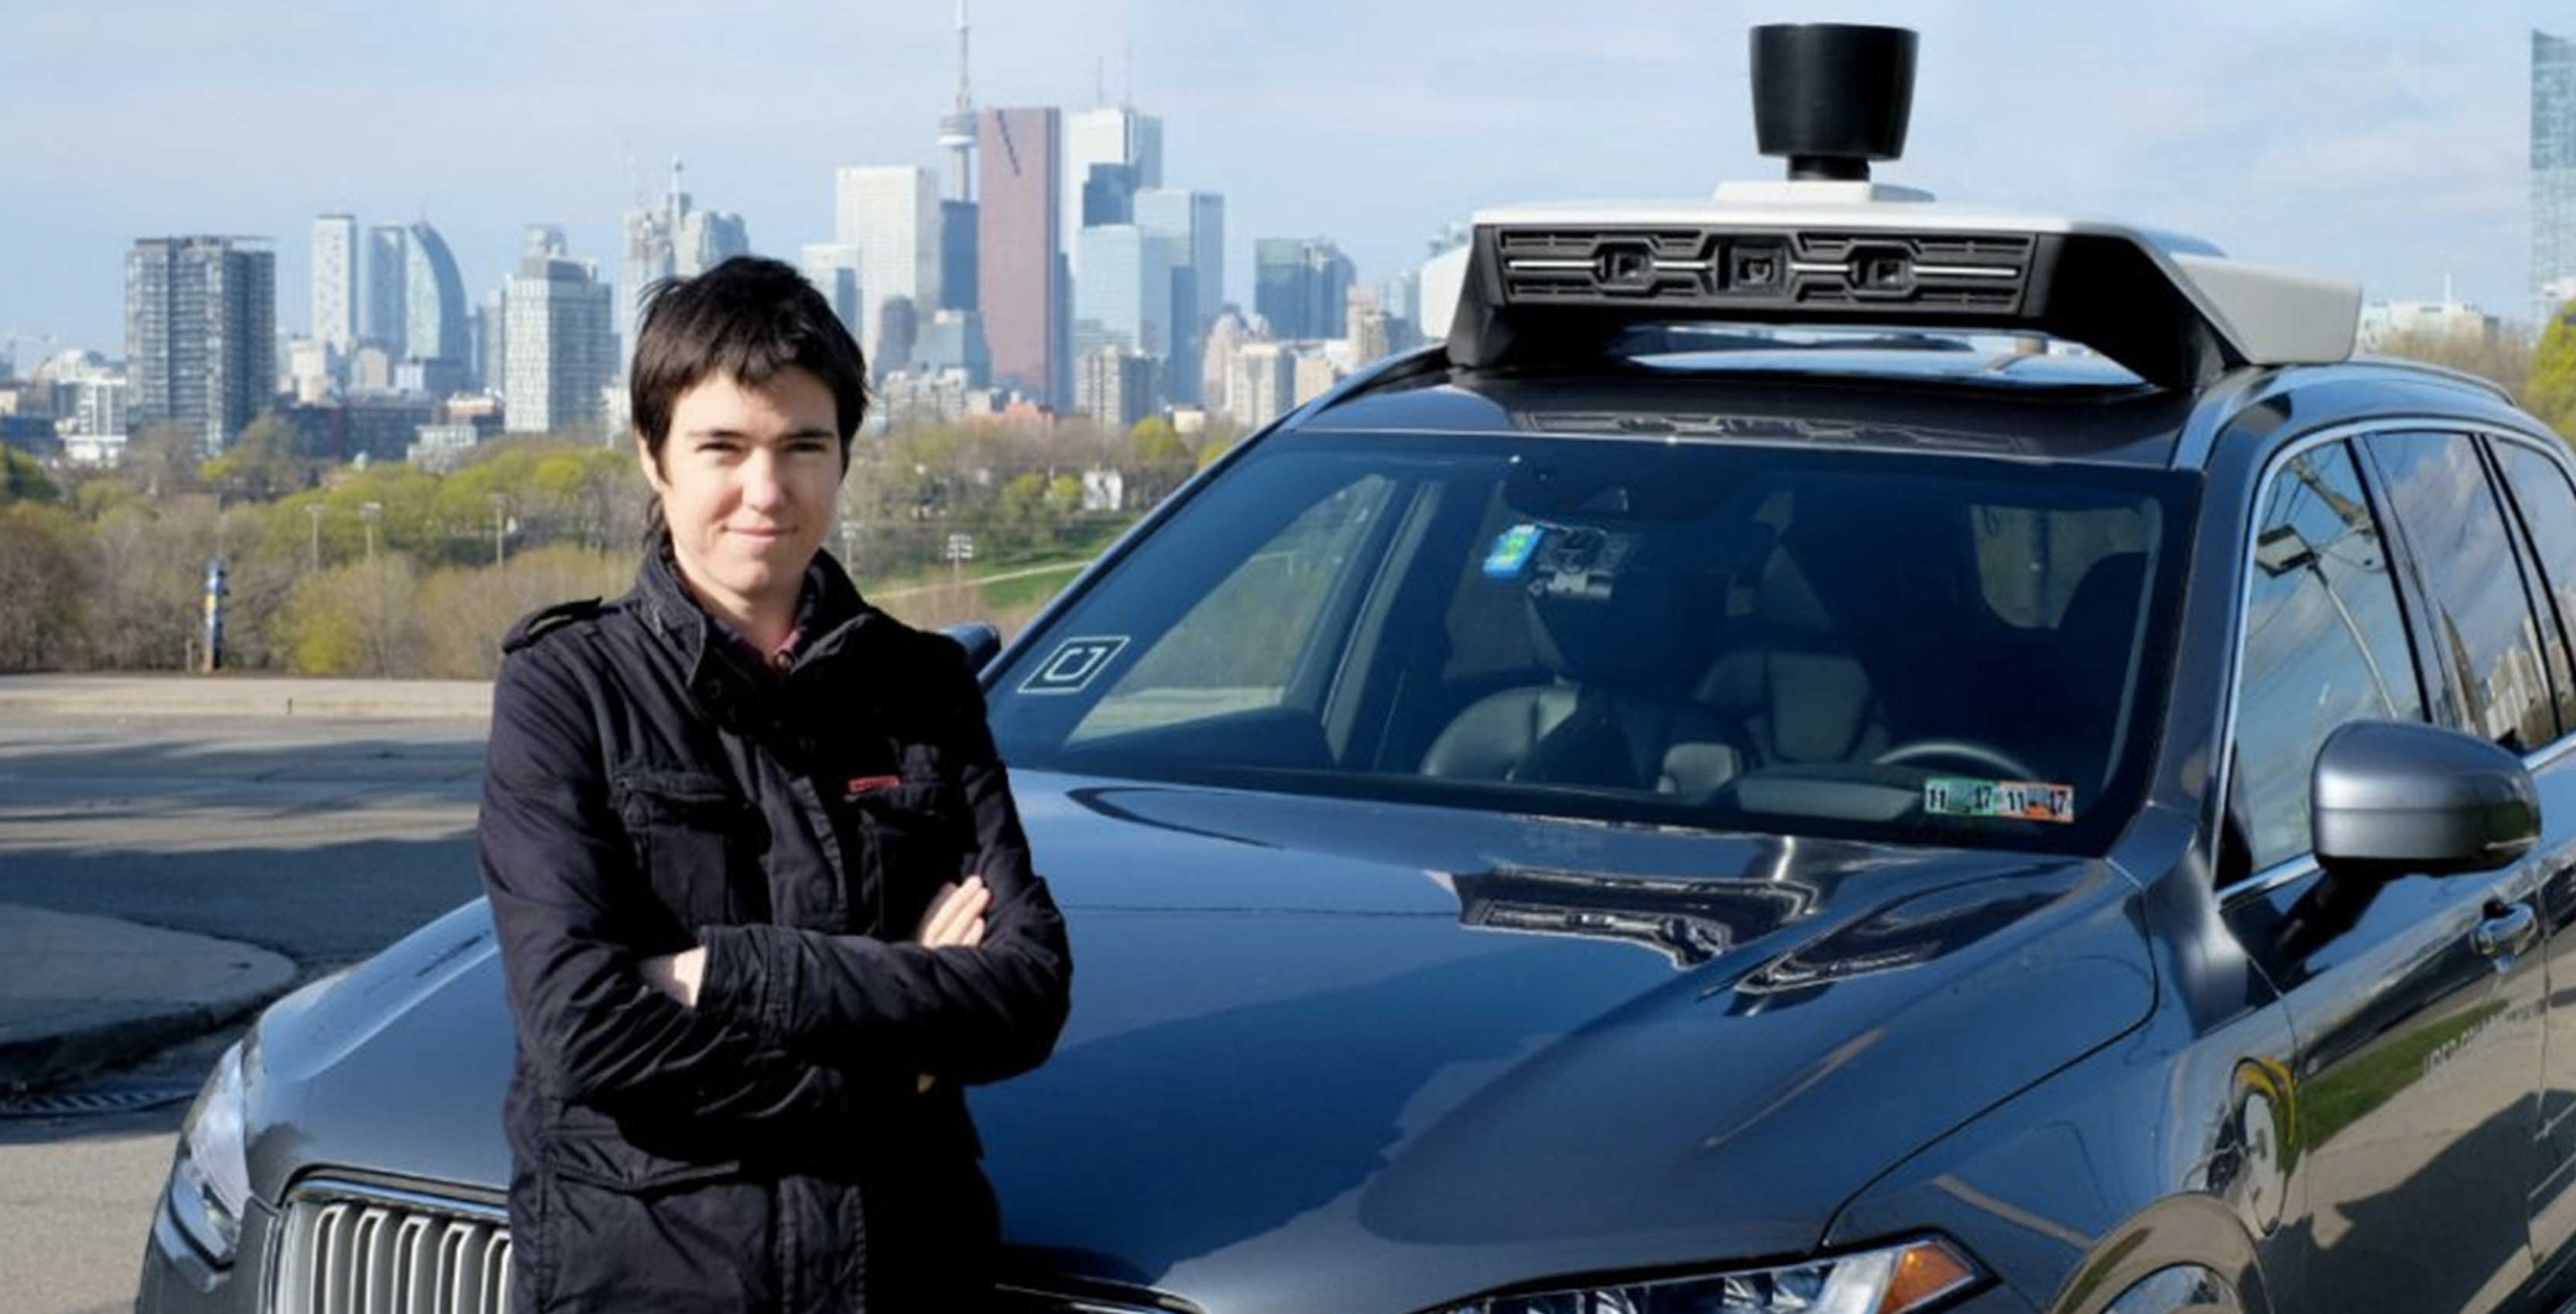 uber driverless car testing Toronto